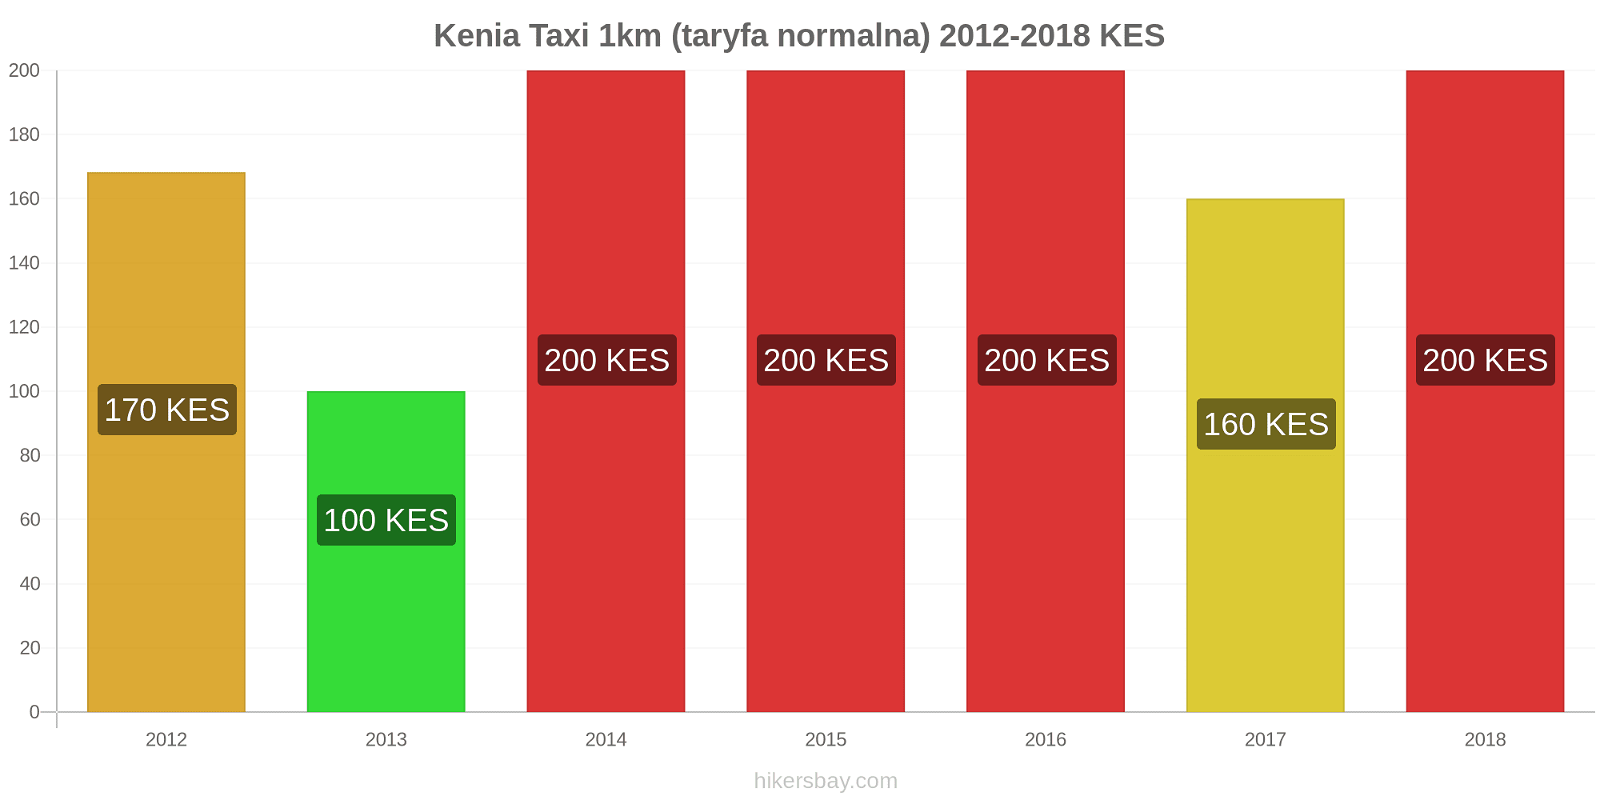 Kenia zmiany cen Taxi 1km (taryfa normalna) hikersbay.com